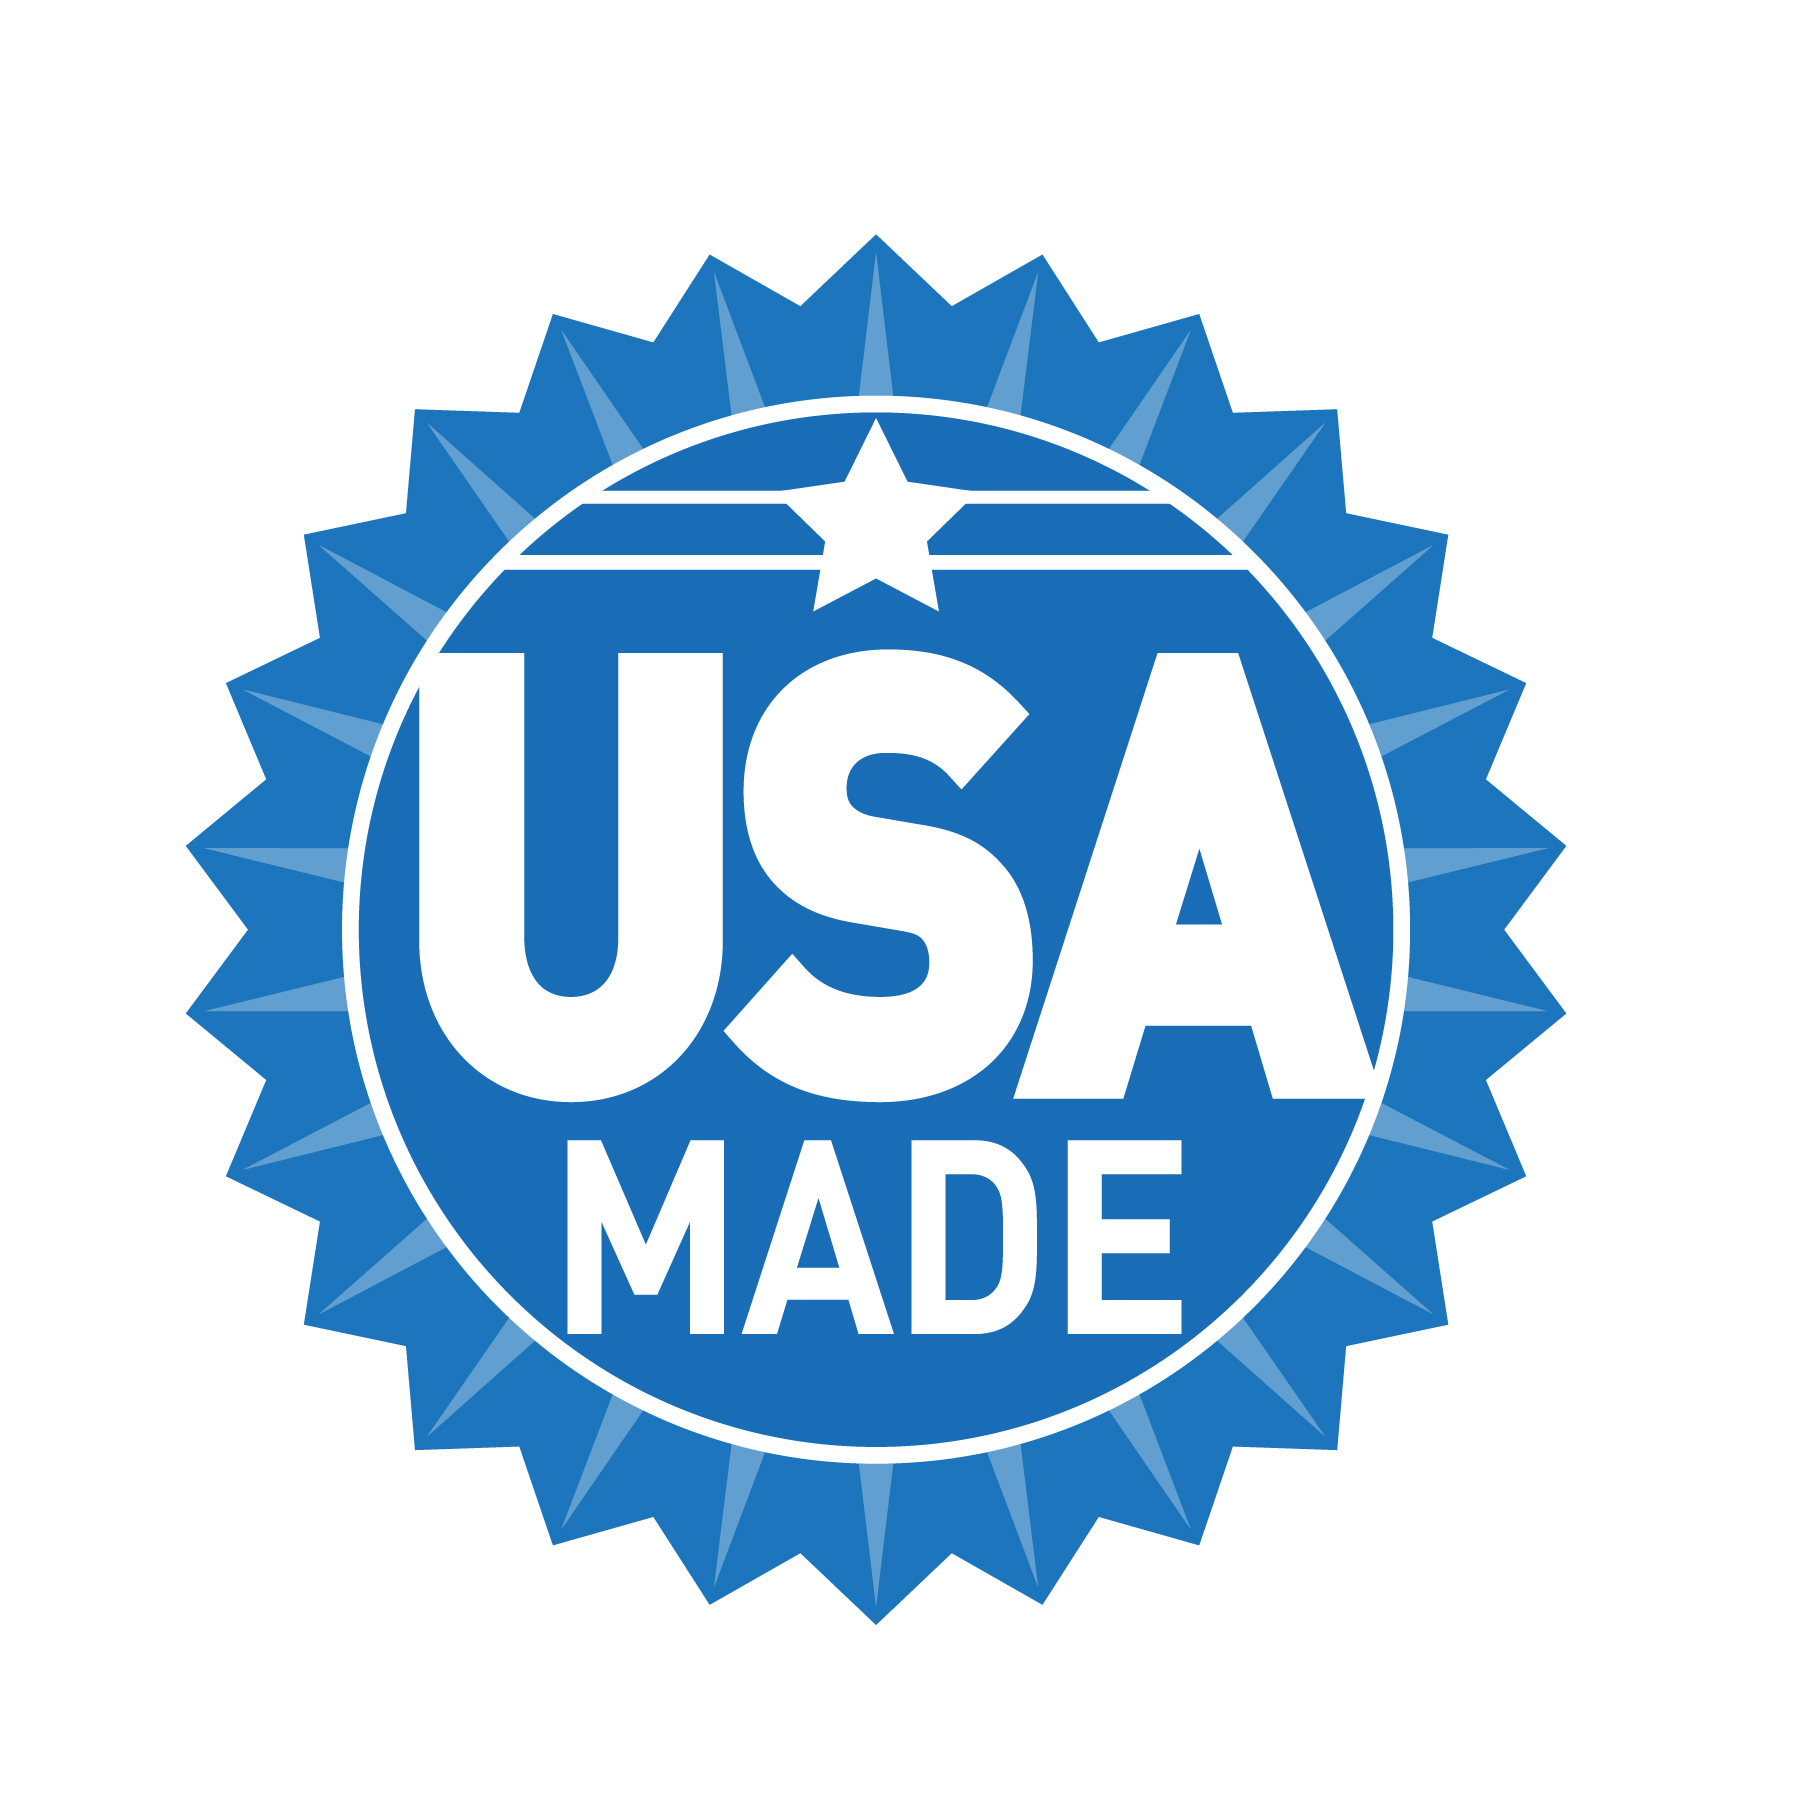 Made in USA logo design